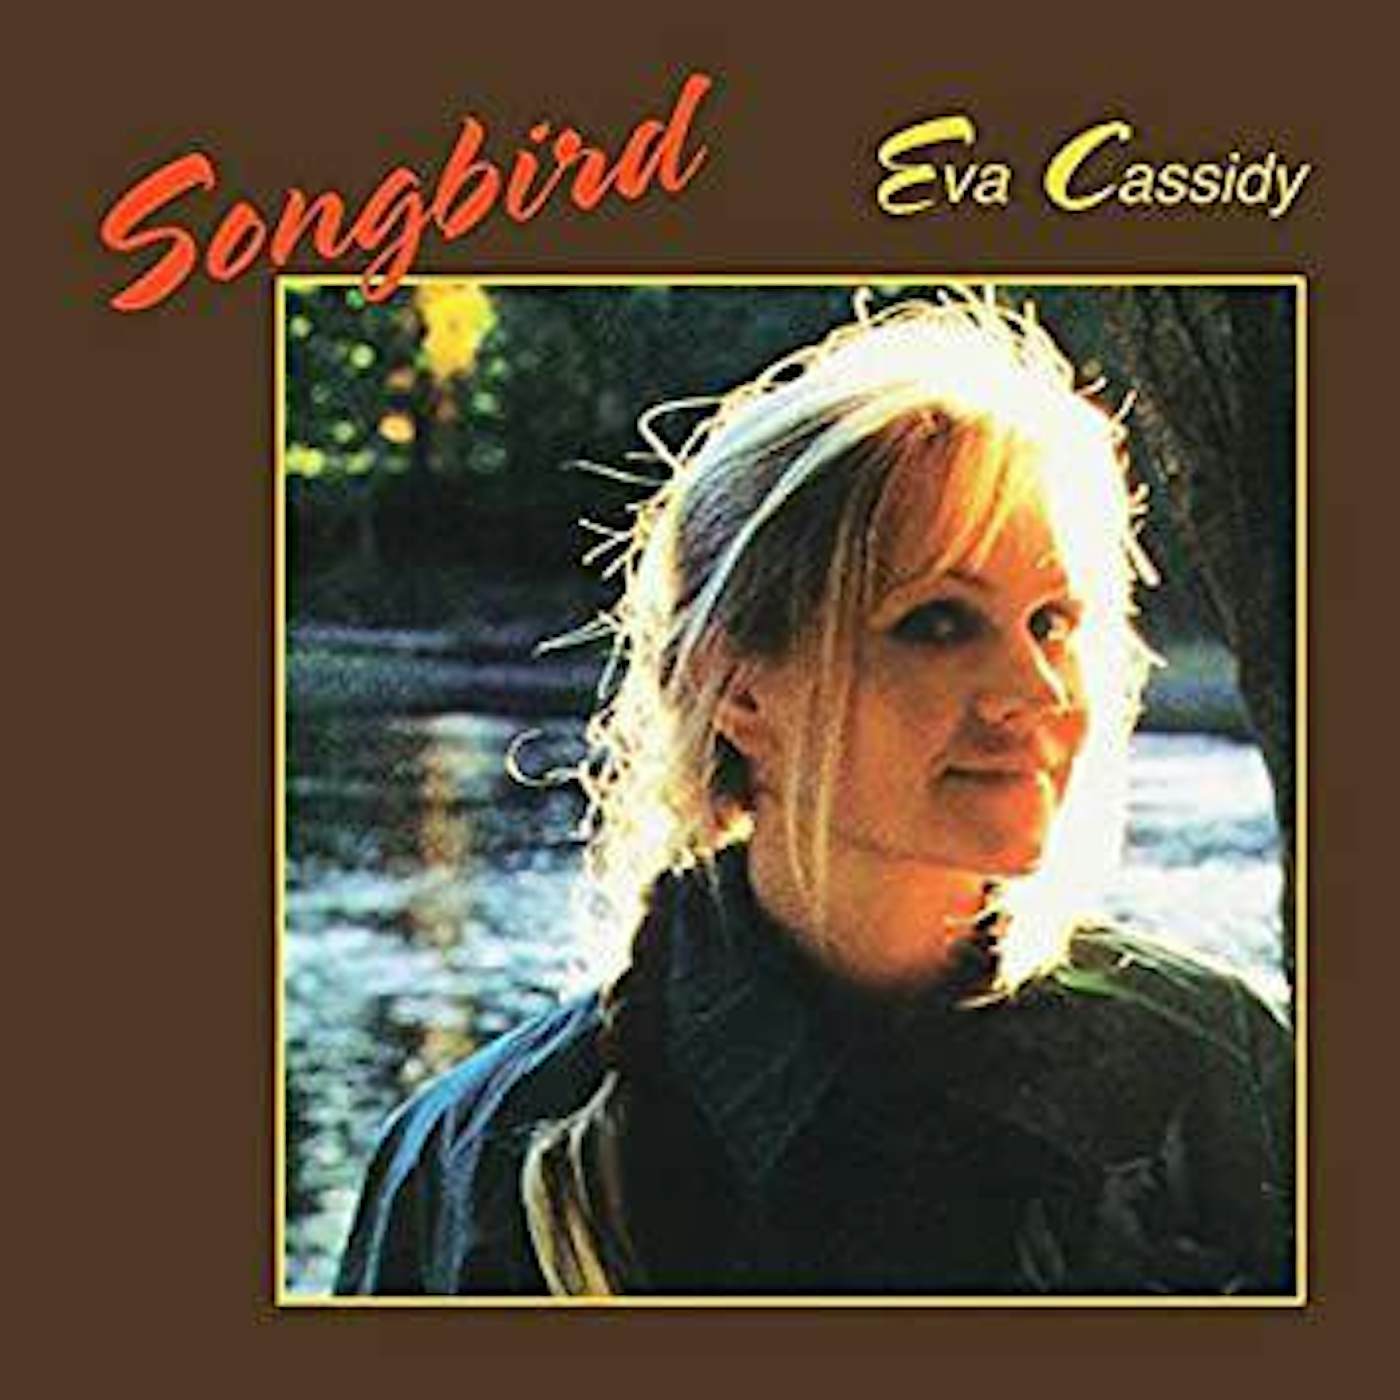 Eva Cassidy Songbird Vinyl Record